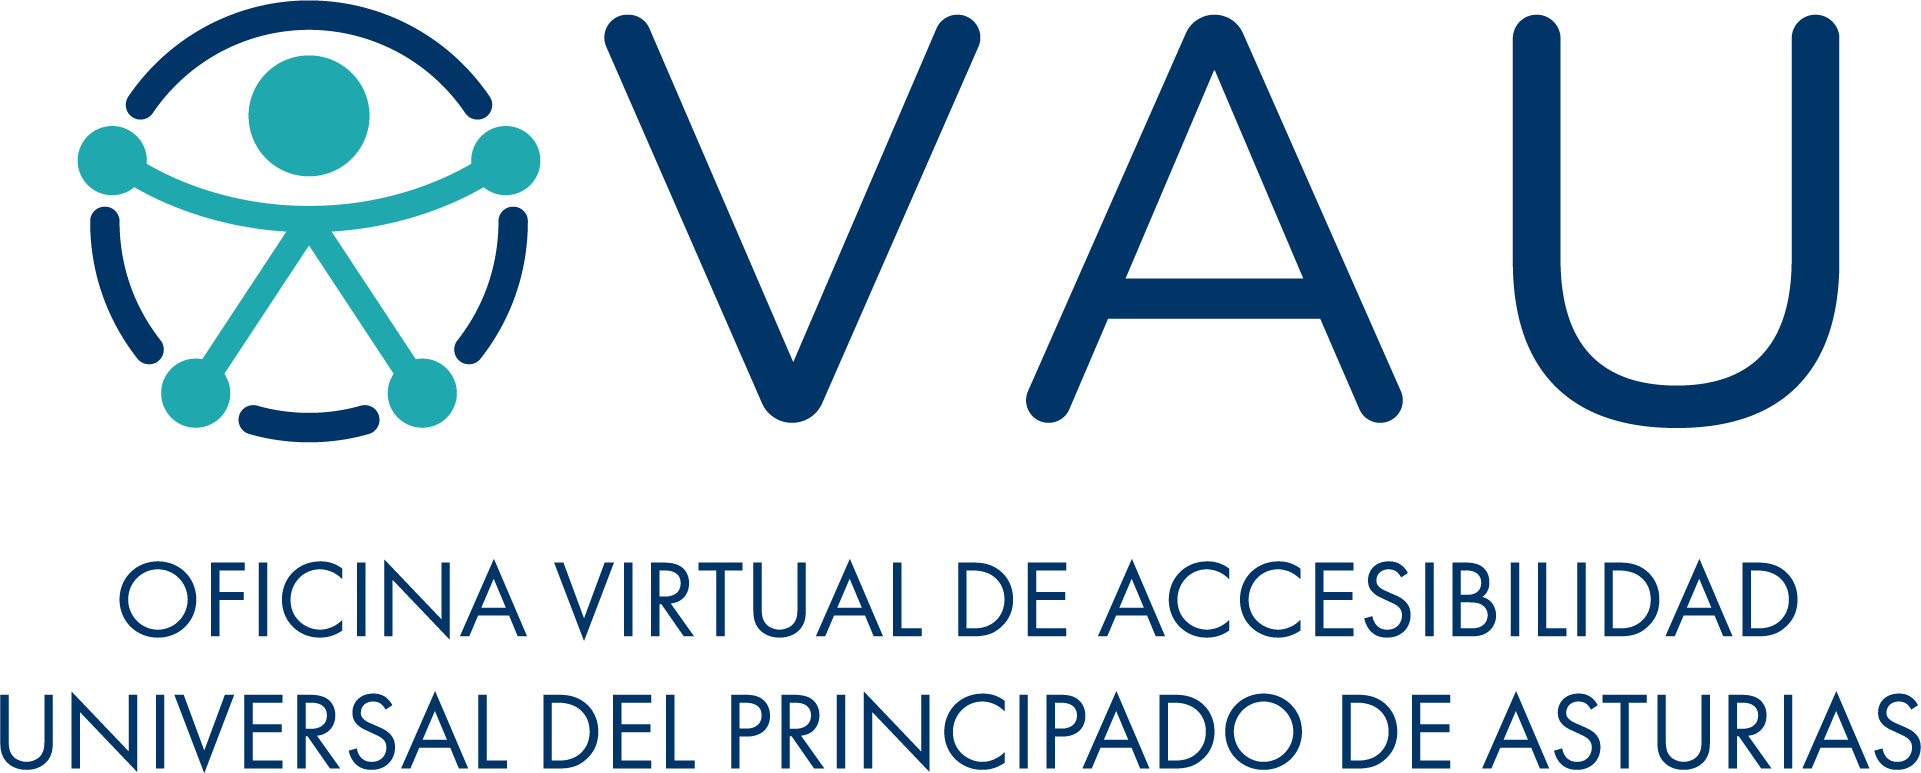 Logo de la Oficina Virtual de Accesibilidad Universal del Principado de Asturias